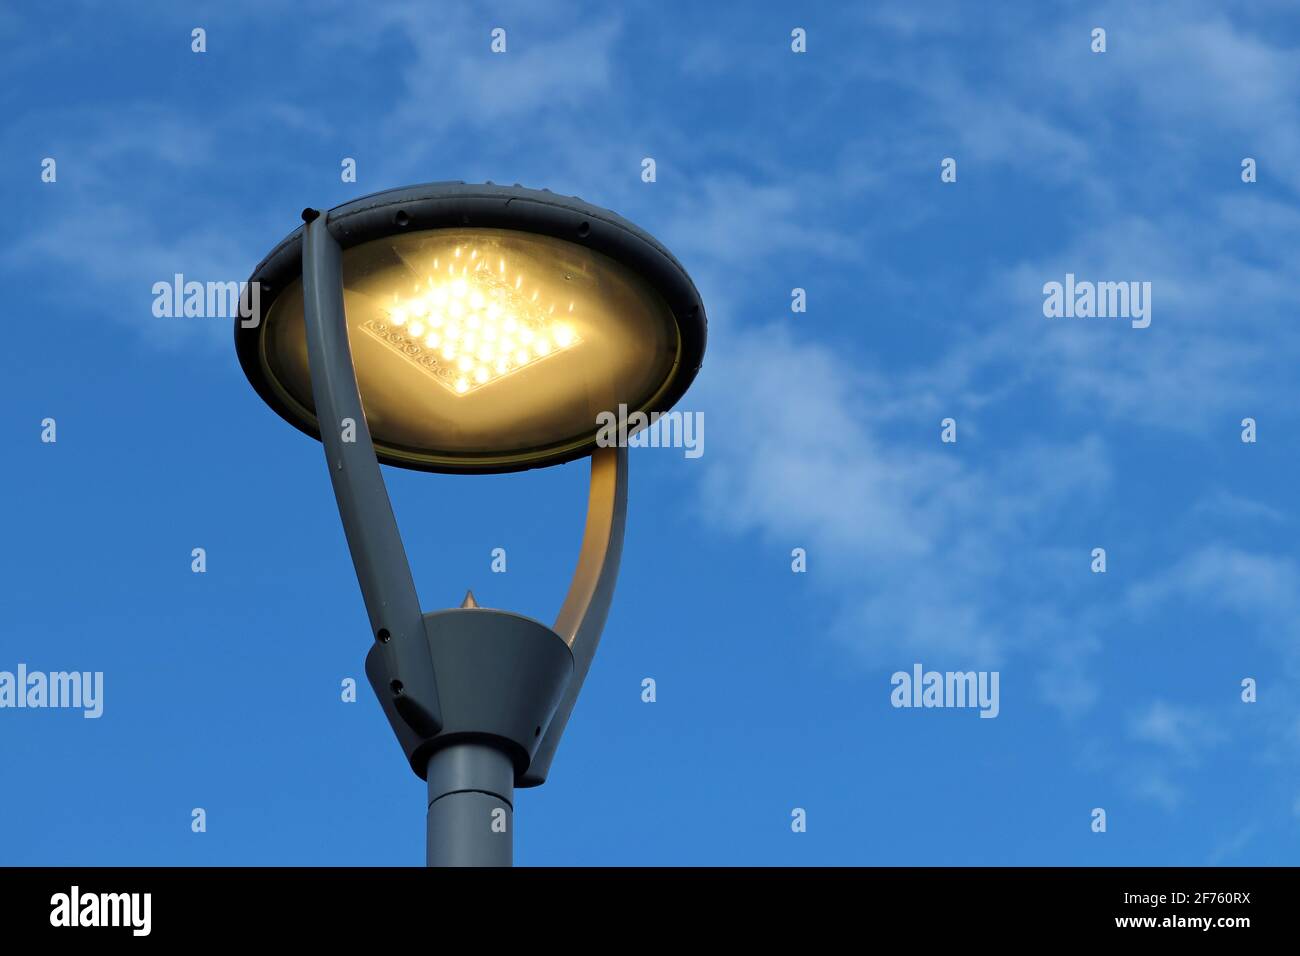 LED-Lampe leuchtet auf blauem Himmel und weißen Wolken Hintergrund.  Elektrische Beleuchtung, energiesparende Straßenlaterne Stockfotografie -  Alamy